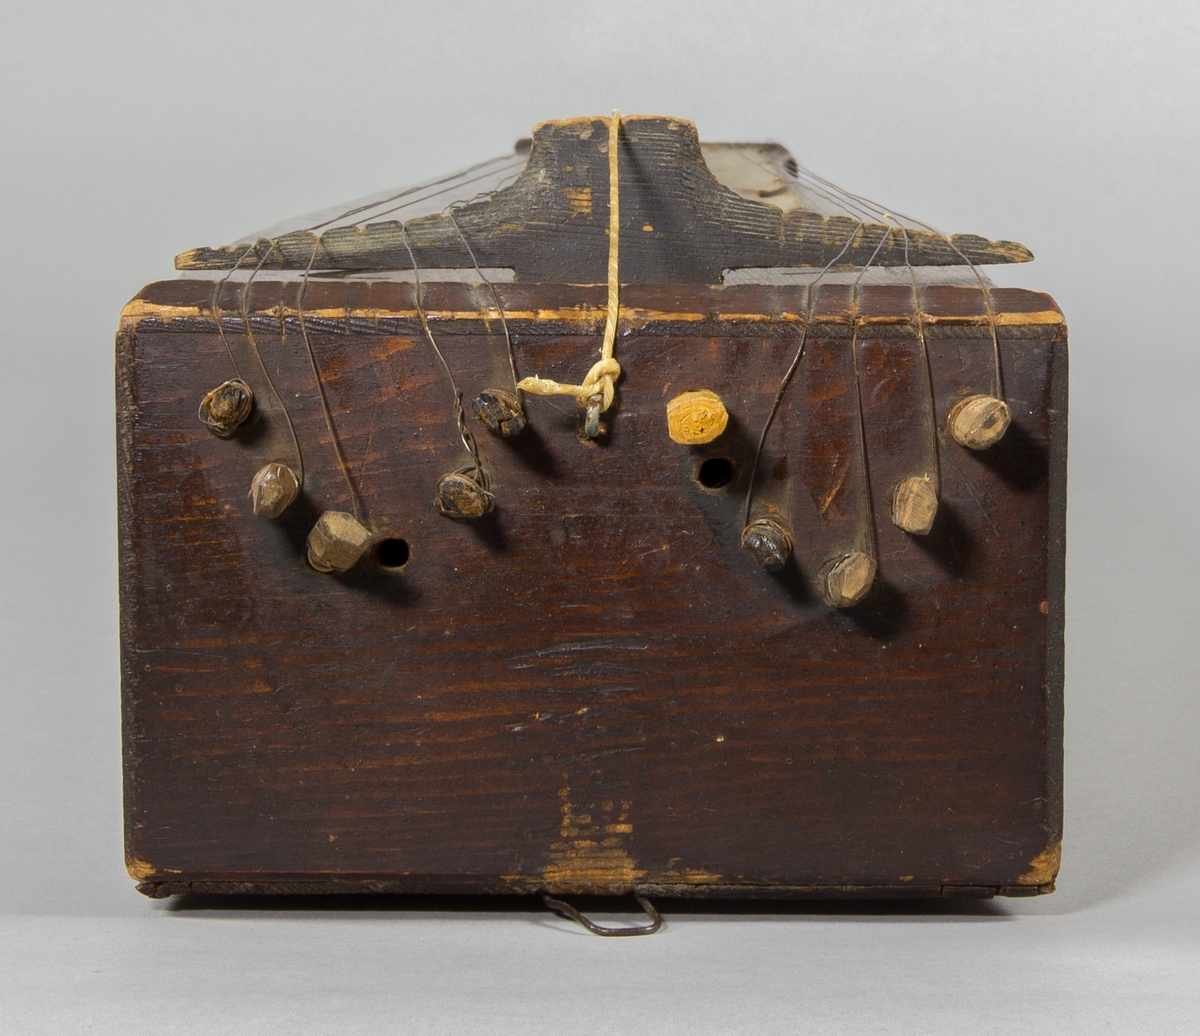 Psalmodikon från Nöbbele, Småland, från c:a 1850. Låda av trä med en sträng, plats för 12 bordunsträngar. Lätt utsvängda sidor, S-formade ljudhål. En remsa av papp med siffror för notlägen monterad på ena sidan om tonbrädan.